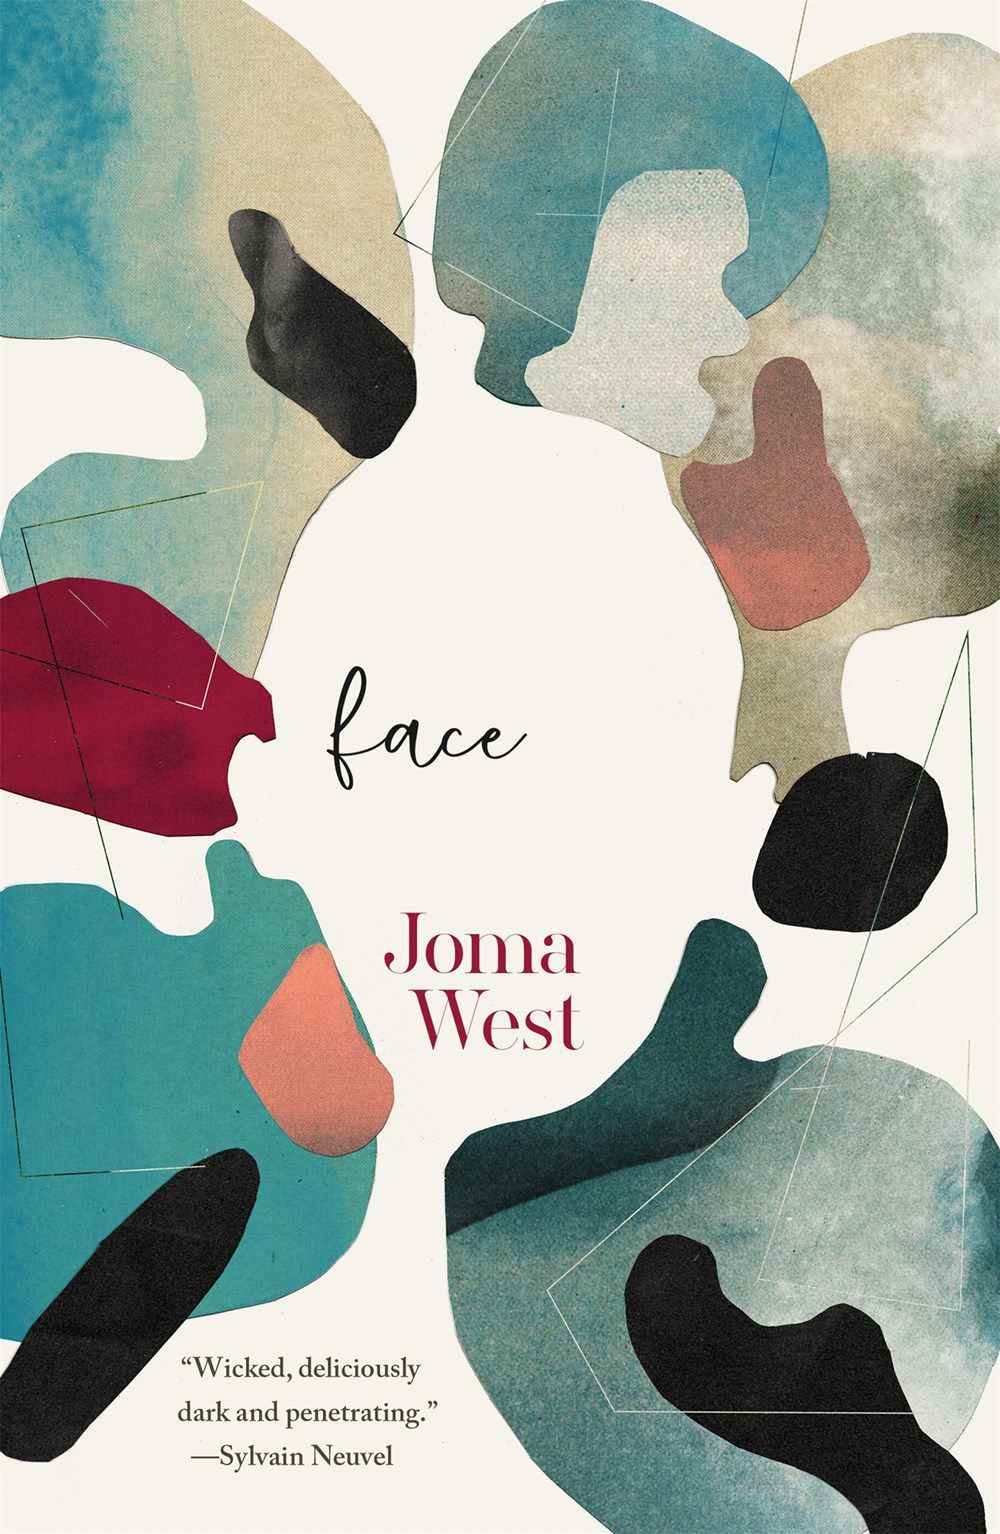 Image de couverture pour Face de Joma West, une combinaison abstraite de couleurs qui crée la forme d'un visage au milieu.